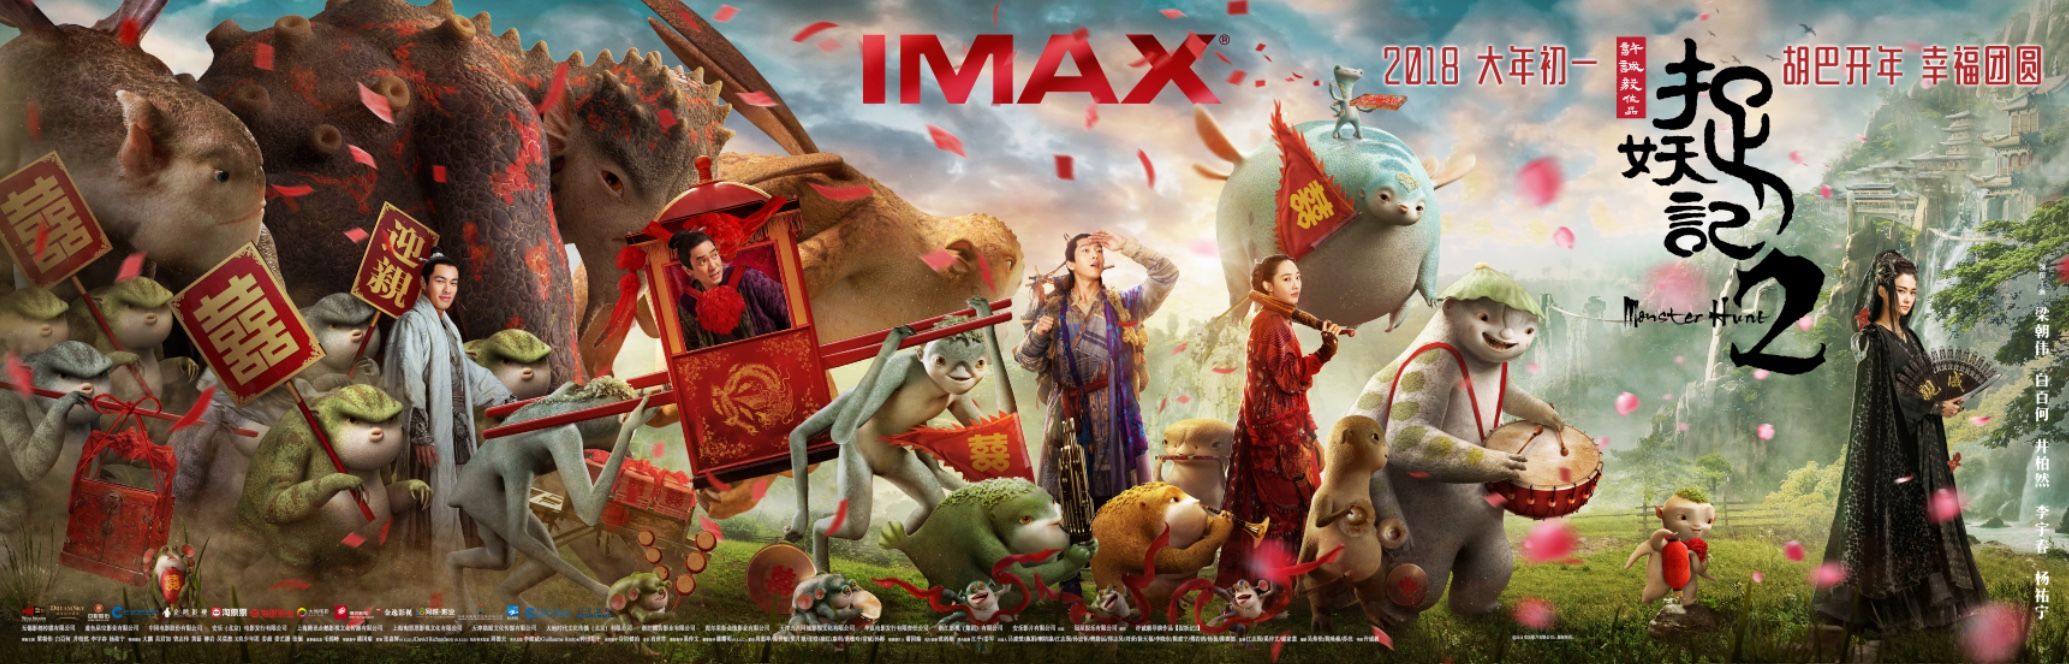 主创力荐IMAX版《捉妖记2》 震撼描绘奇幻画卷